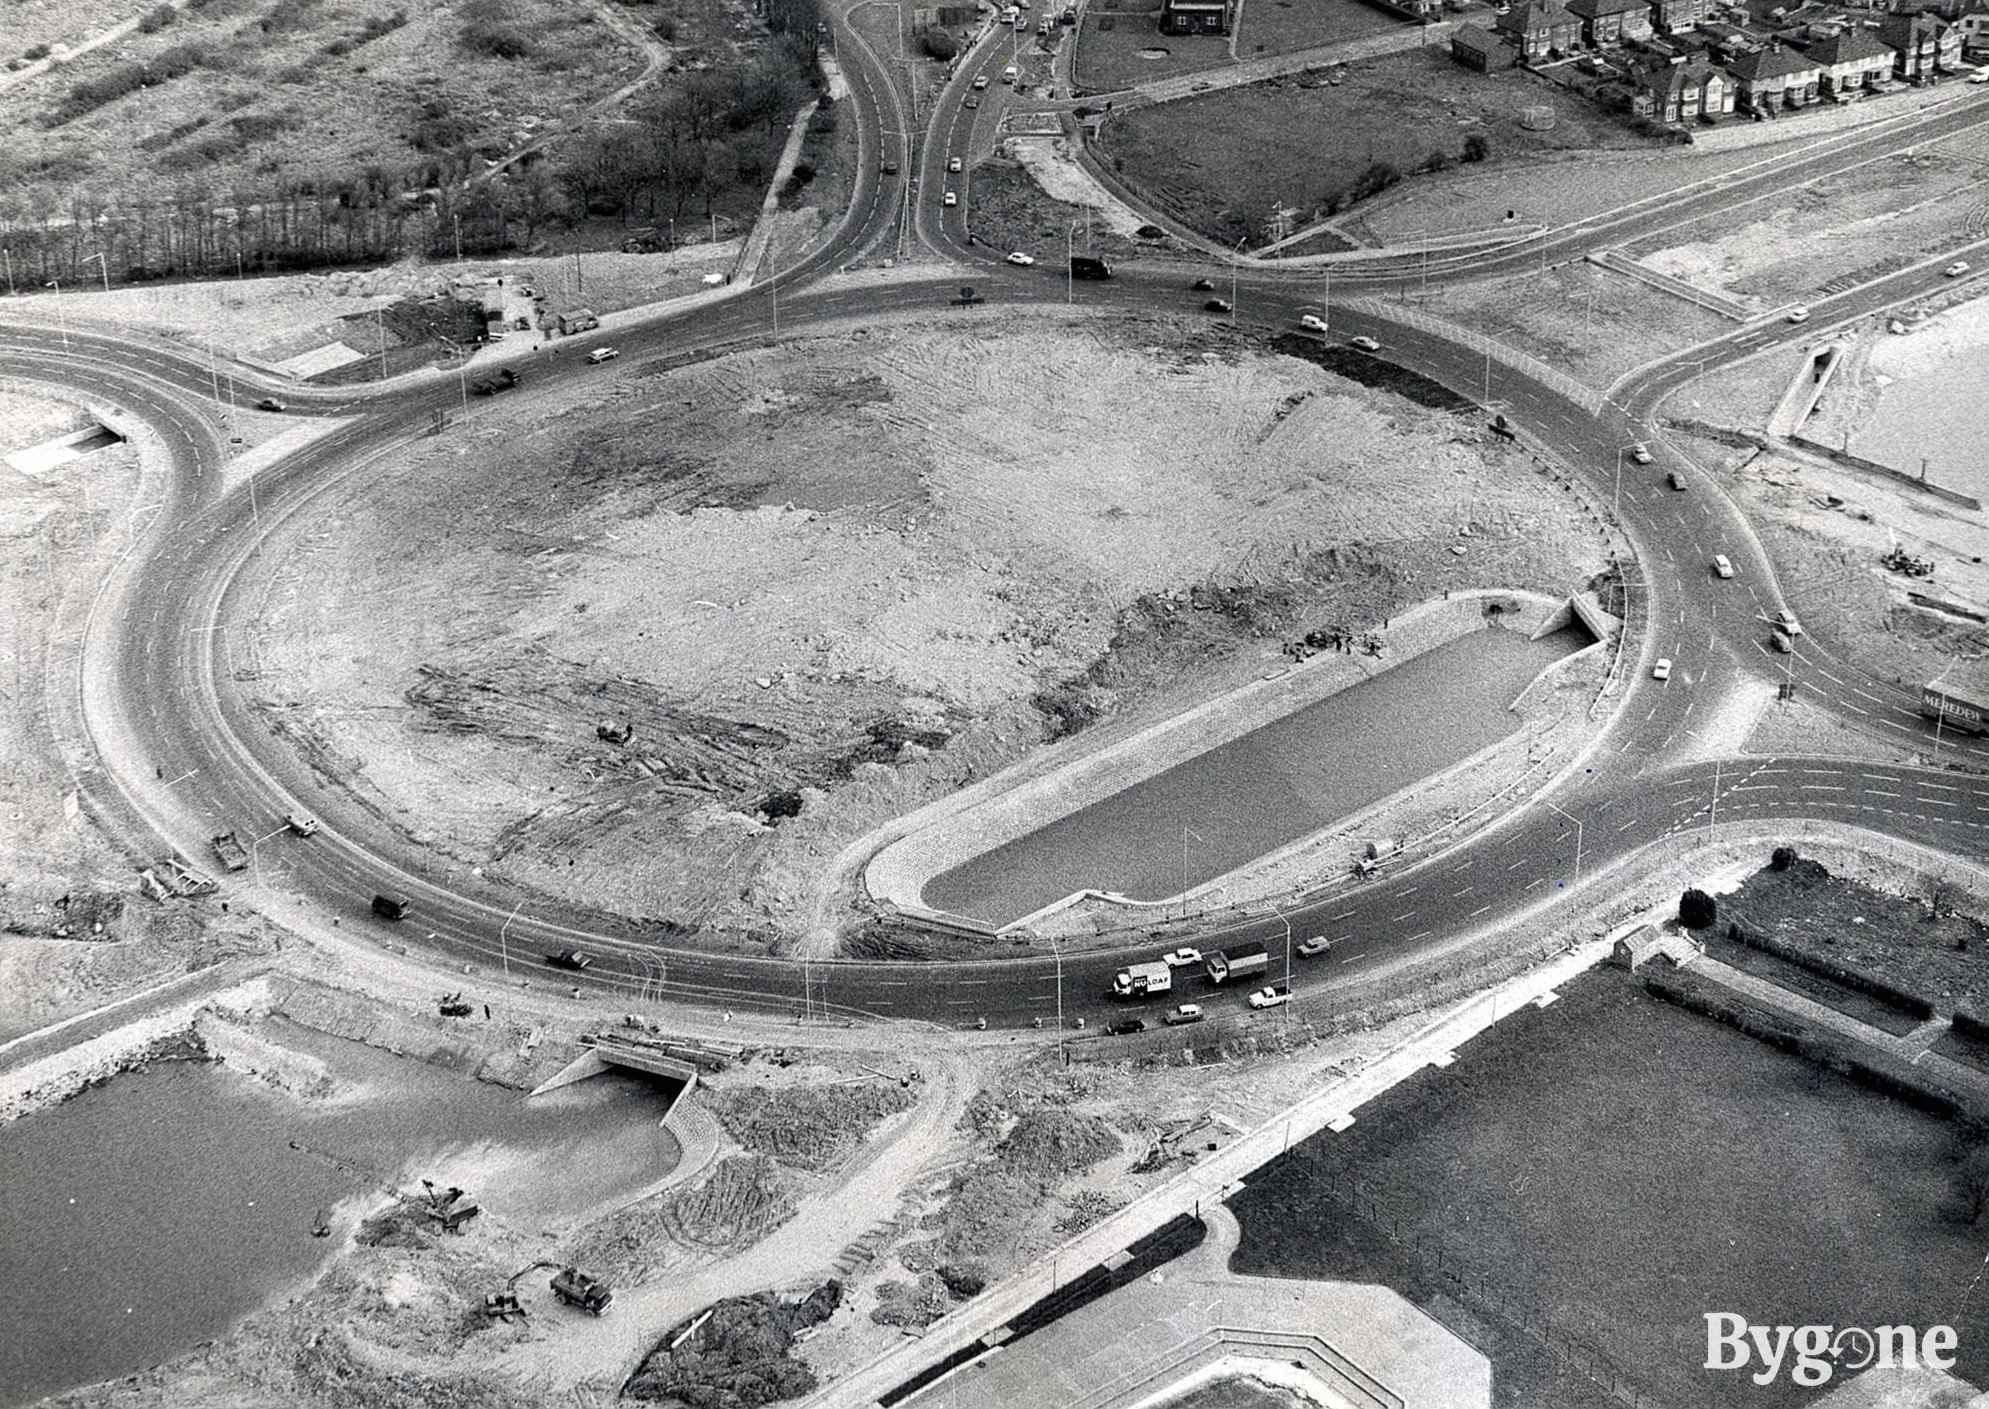 Portsbridge Roundabout, 1970